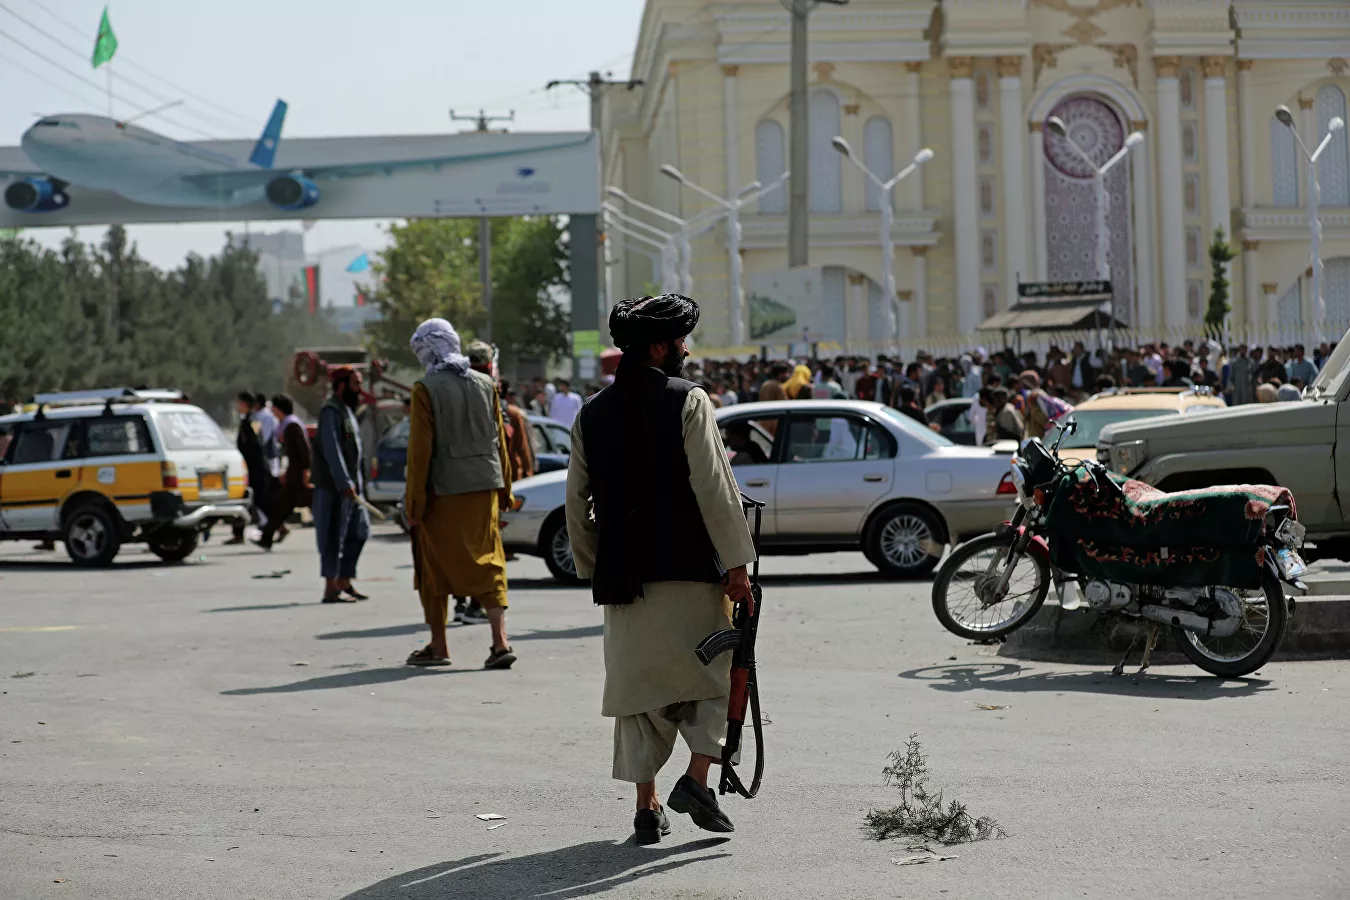 ABD’nin milyarlarca dolar değerindeki askeri teçhizatının Taliban’ın eline geçtiği değerlendiriliyor